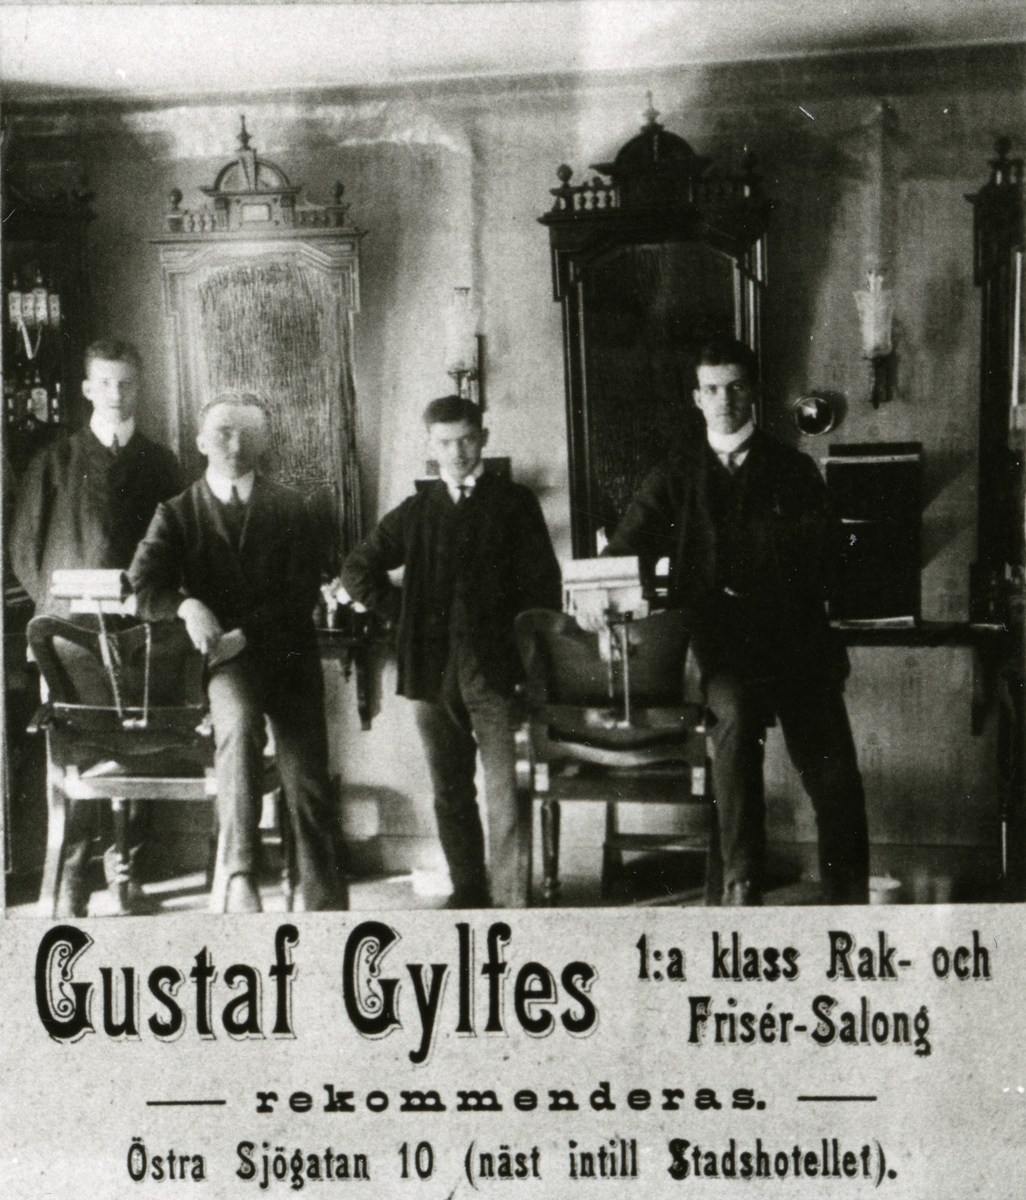 Del av annonsblad med reklam för Gustaf Gylfes 1:a klass Rak - och Frisér-Salong,